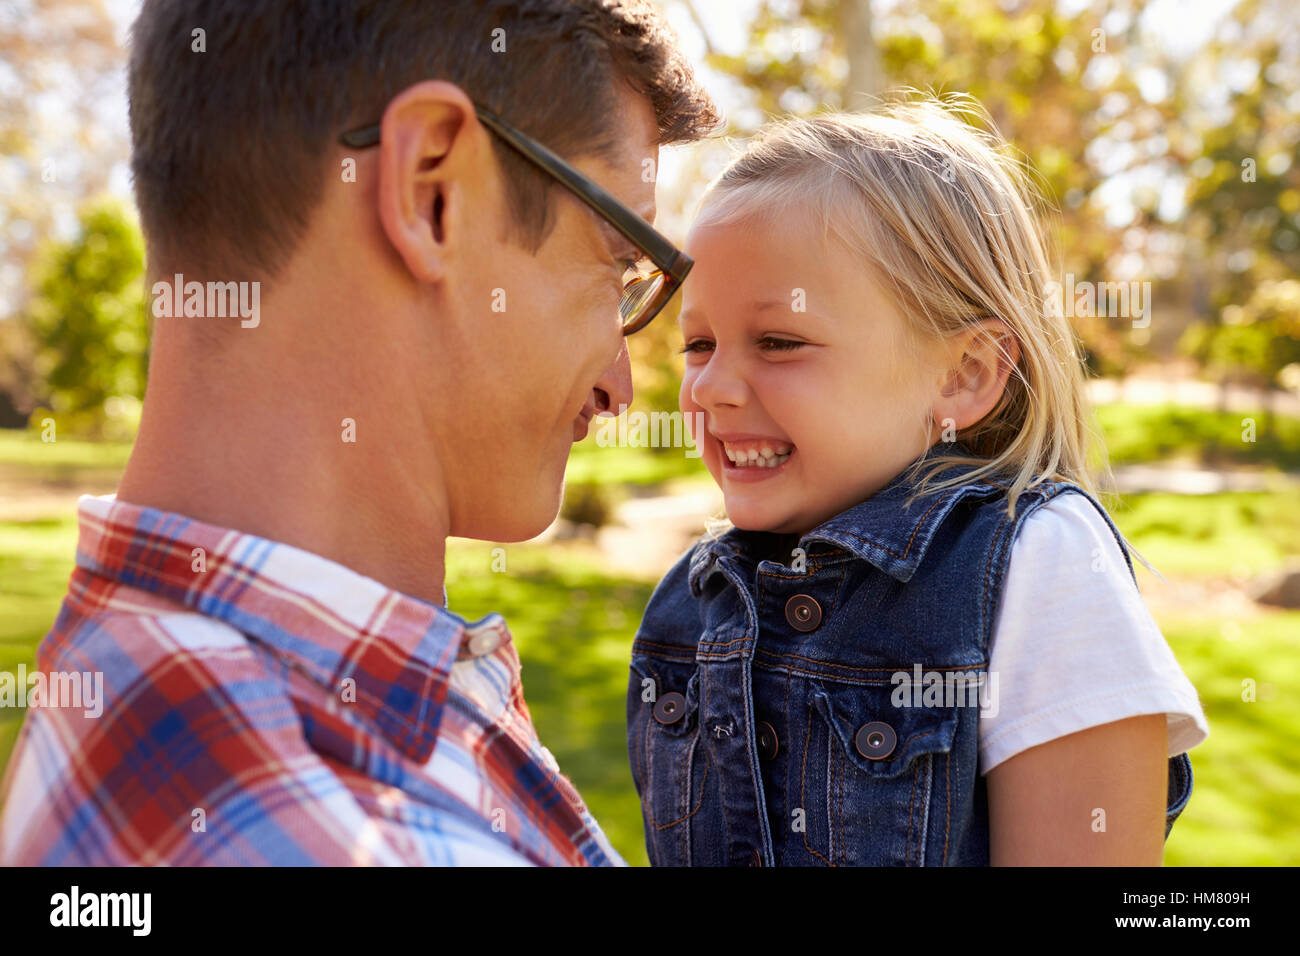 Père et fille pulling faces à l'autre dans un parc Banque D'Images